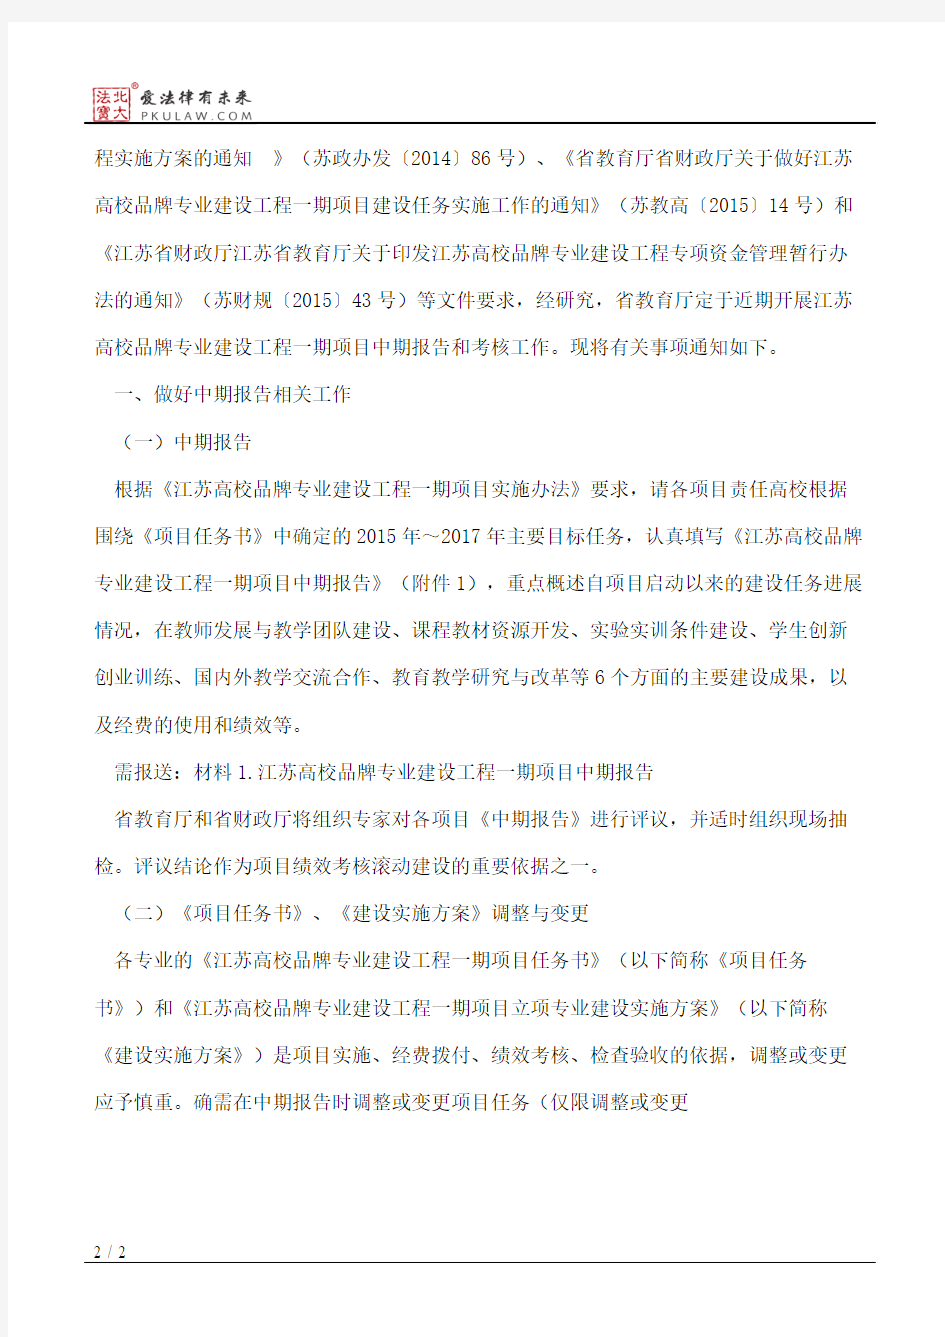 江苏省教育厅关于做好江苏高校品牌专业建设工程一期项目中期报告